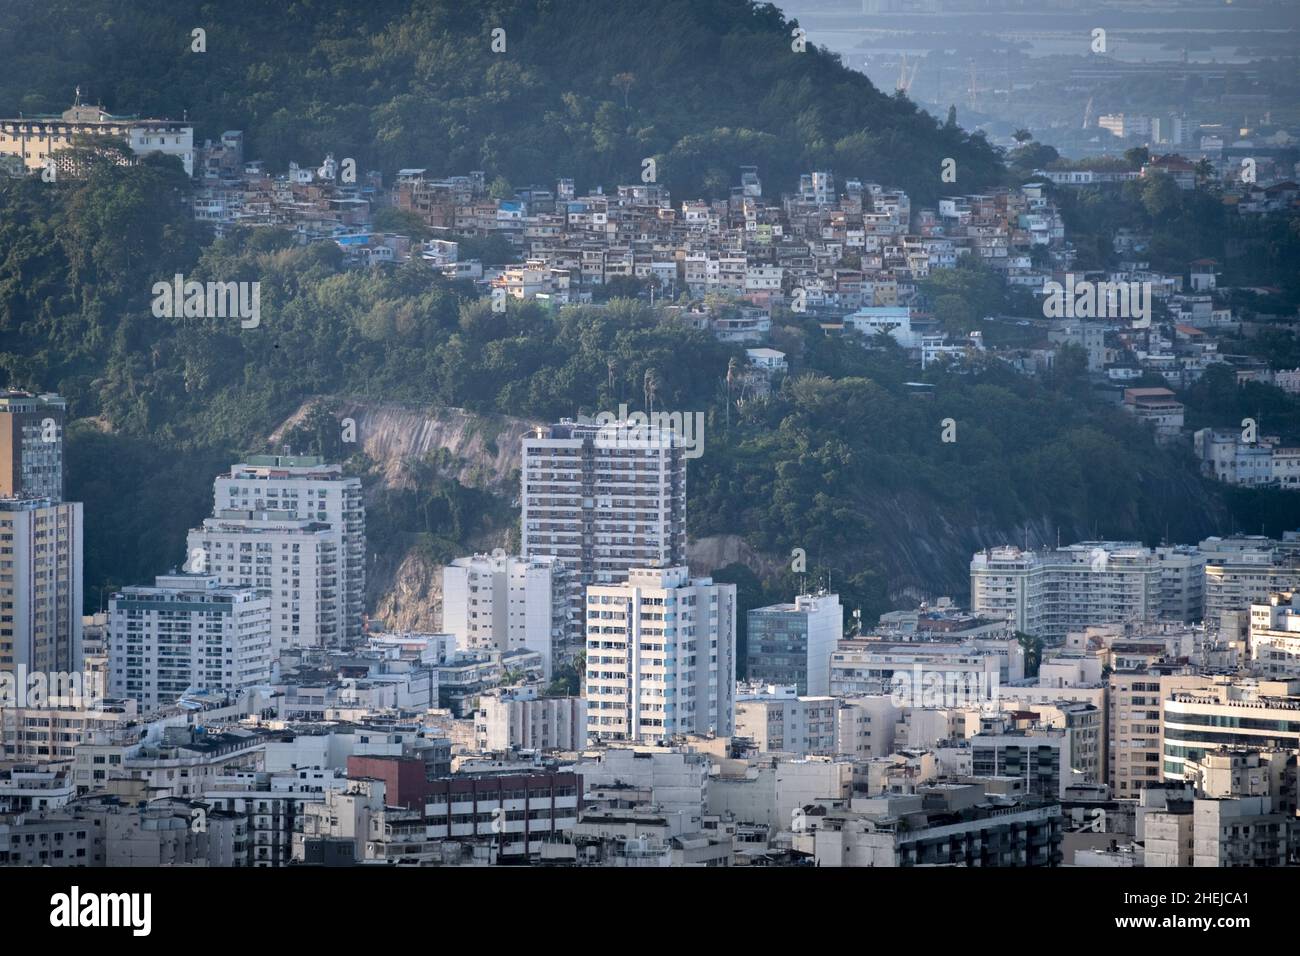 Rio, Flamengo Beach - das WLM (im Vordergrund höchstes Gebäude) & Apartments. Tavares Bastos & Santo Amaro Favelas dahinter, das Zentrum & Guanabara Bay Stockfoto